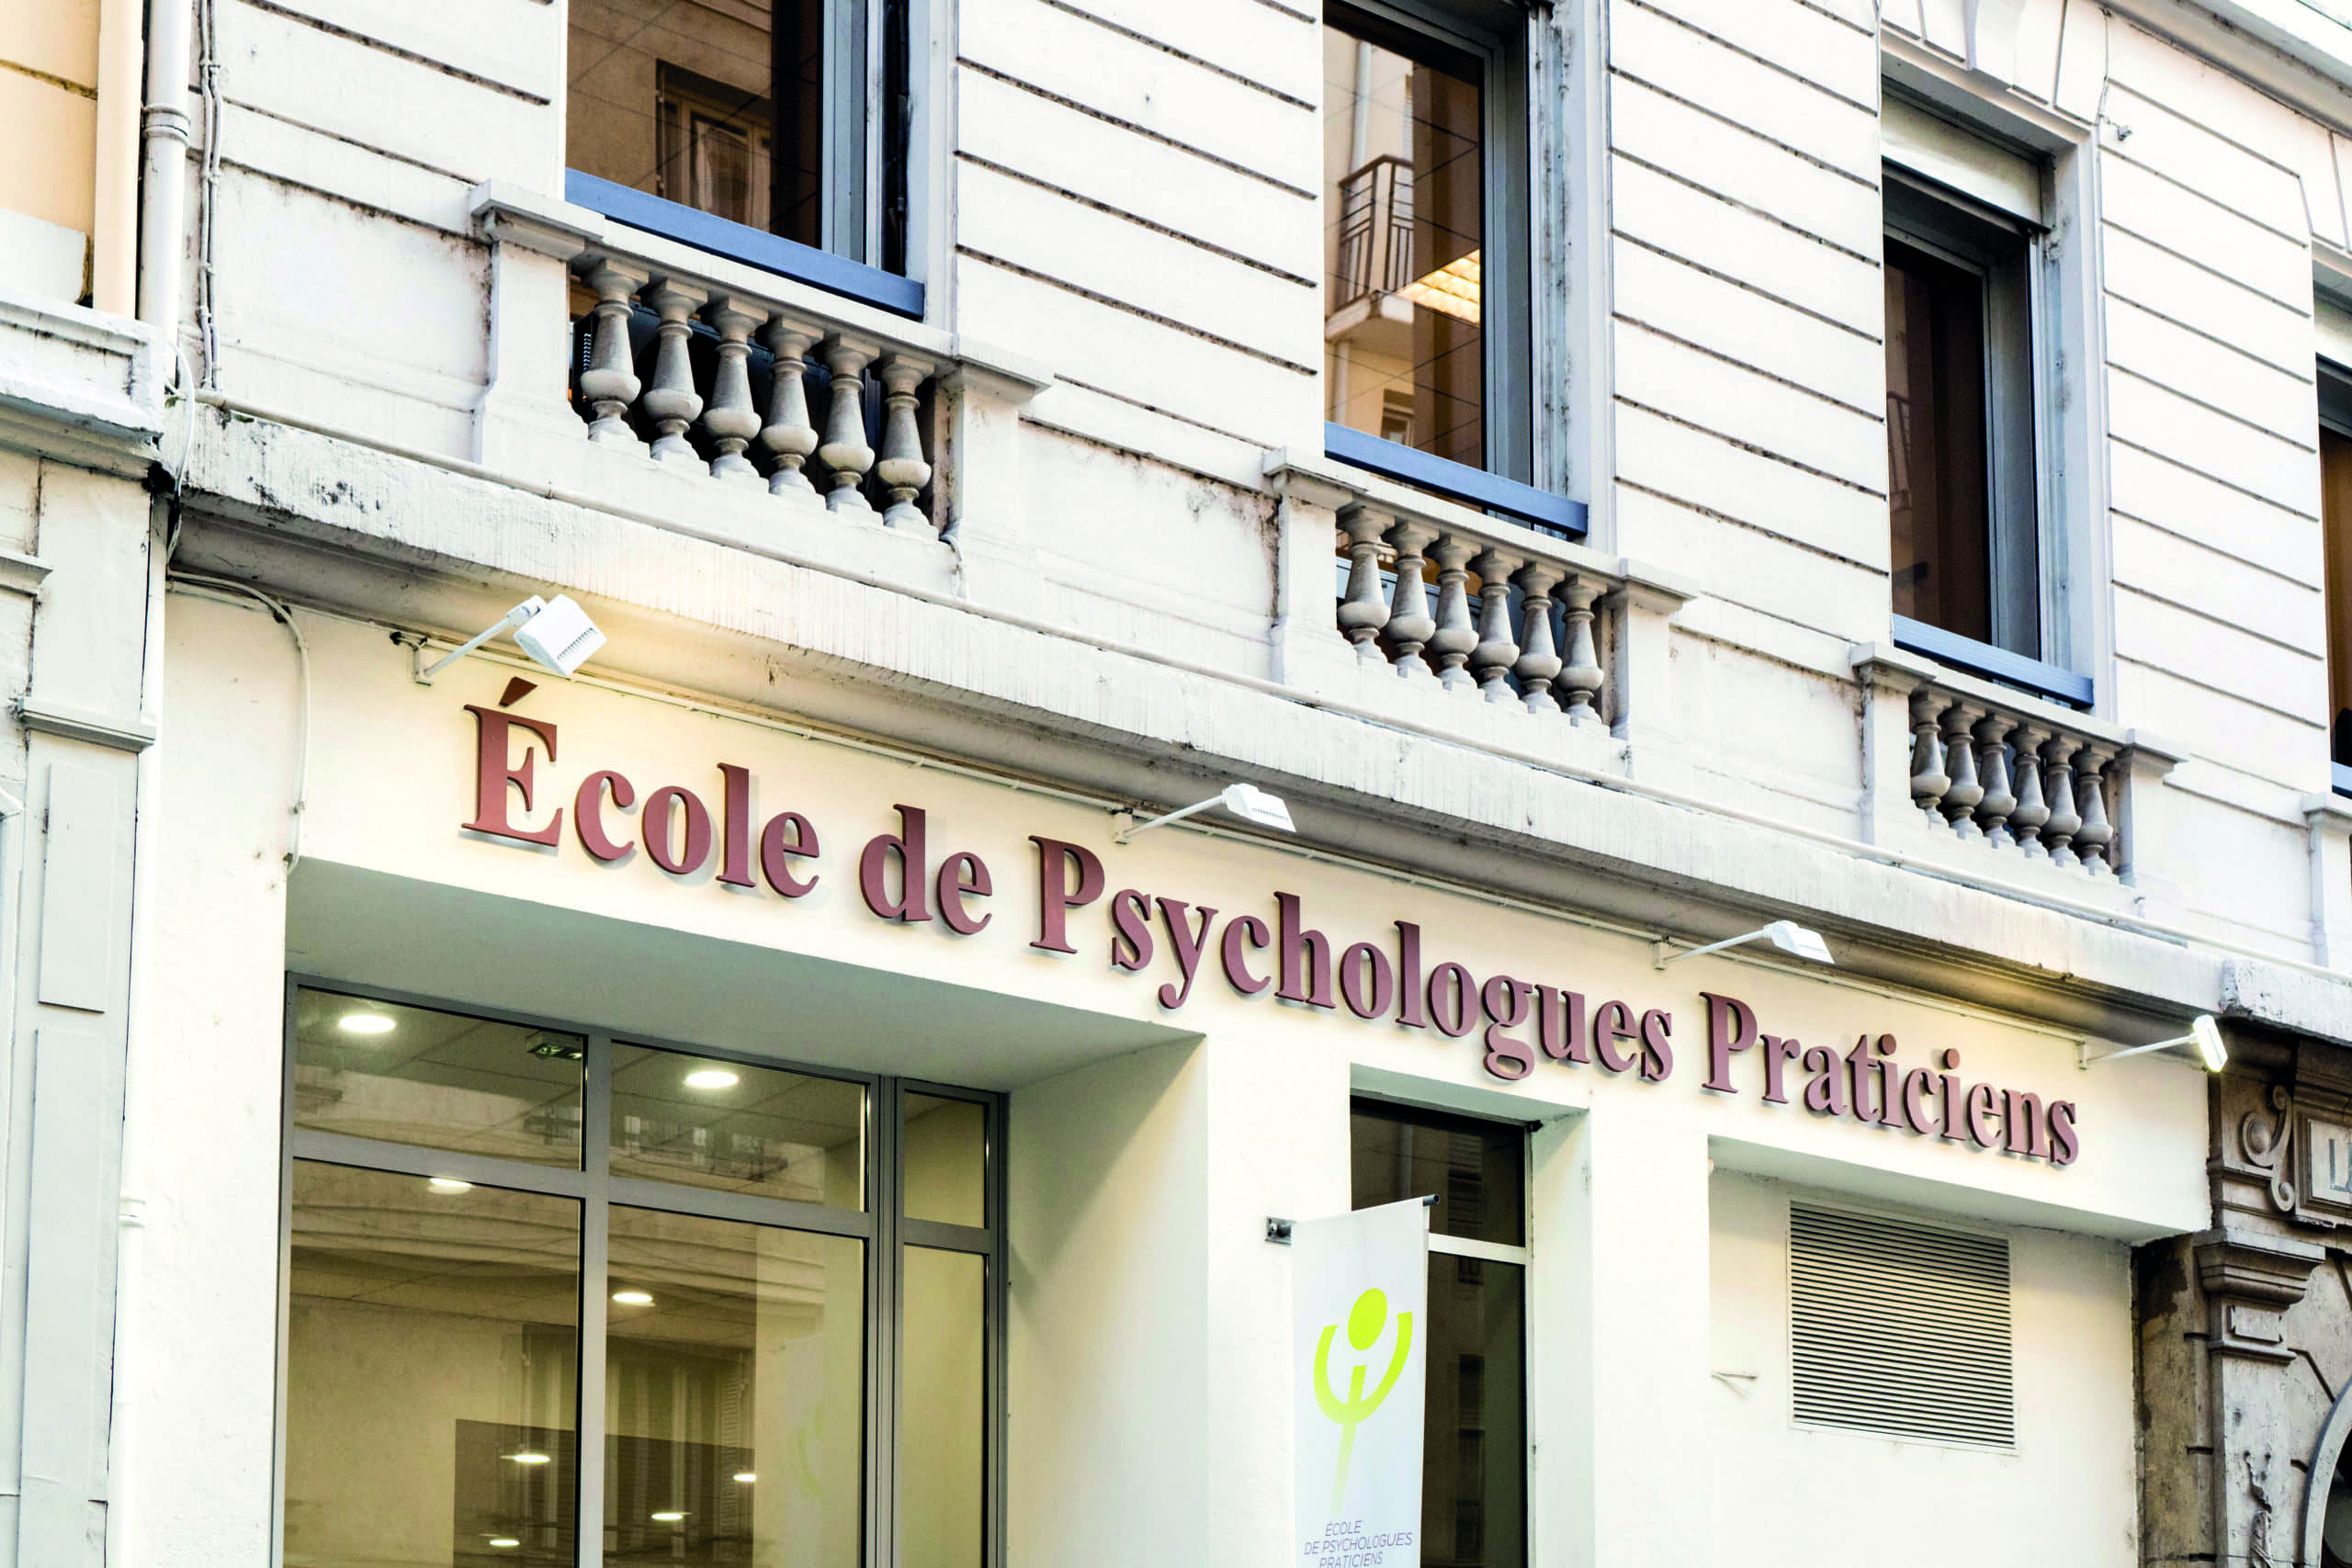 Façade campus Lyon École de Psychologues Praticiens